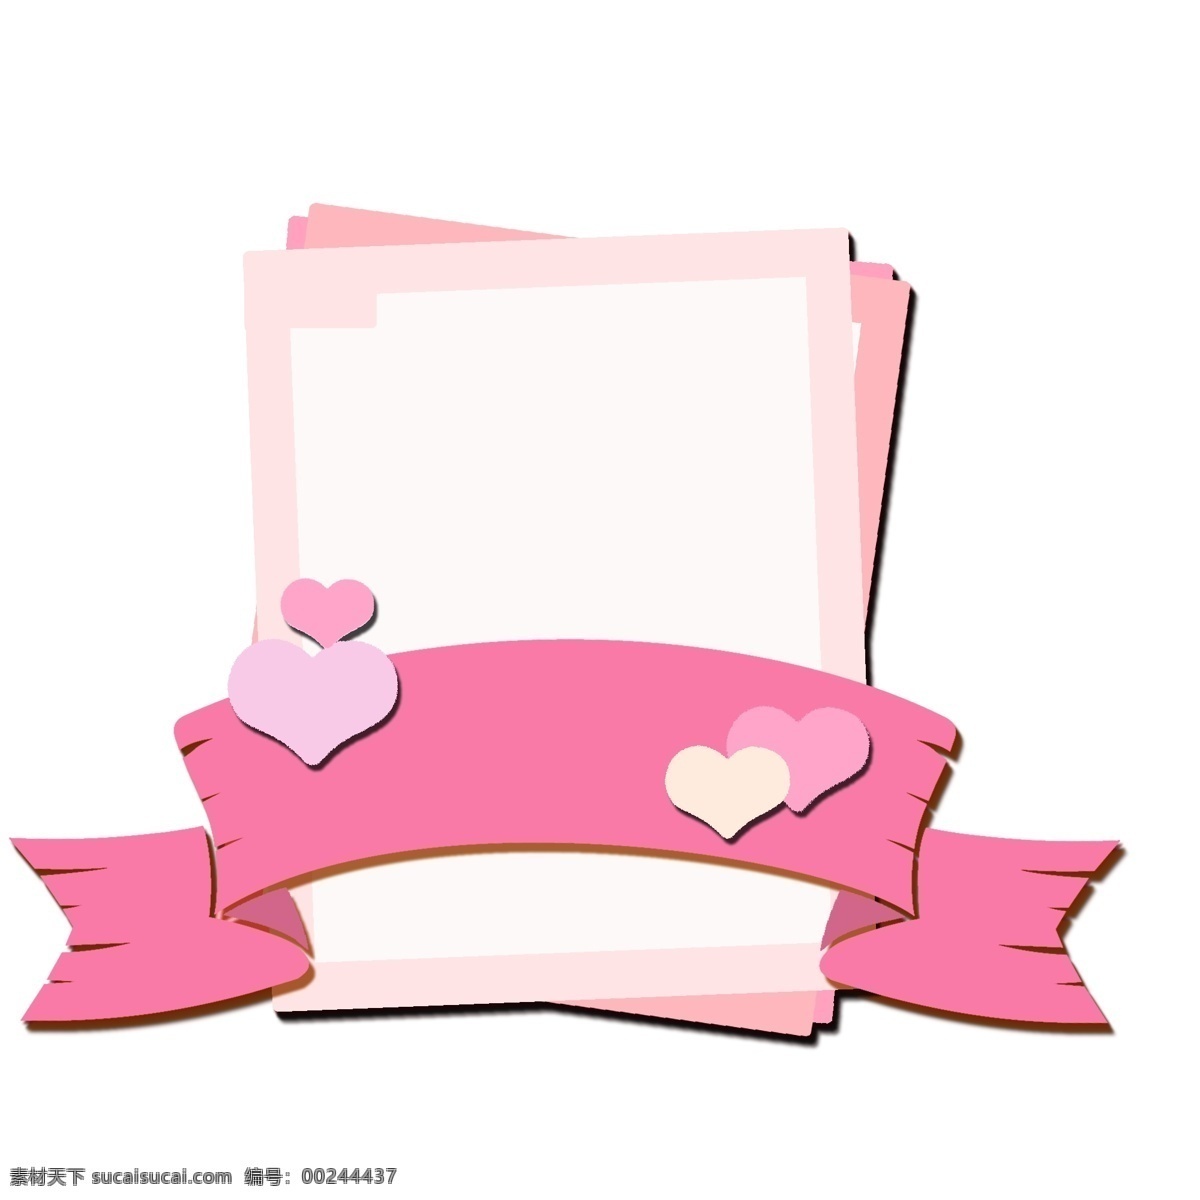 婚礼 边框 卡通 手绘 插画 粉色 爱心 卡通手绘插画 简单边框 可爱边框 甜蜜 爱情 小清醒 唯美